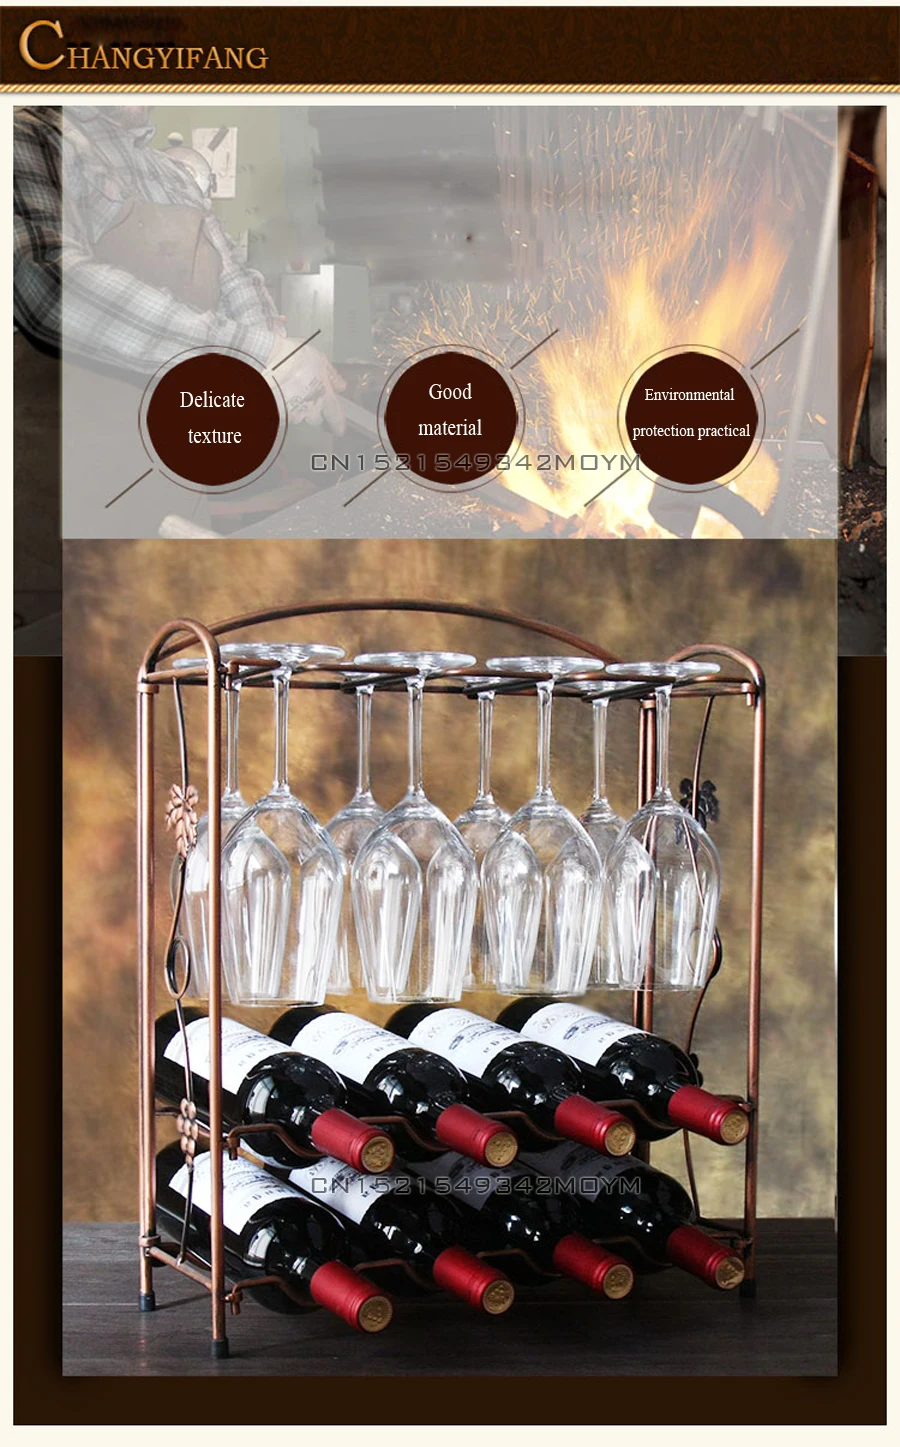 Демонтаж Ретро железа искусство красное вино стойки пробковый контейнер держатель бутылки кухня бар дисплей ремесло ручной работы винный стенд украшения